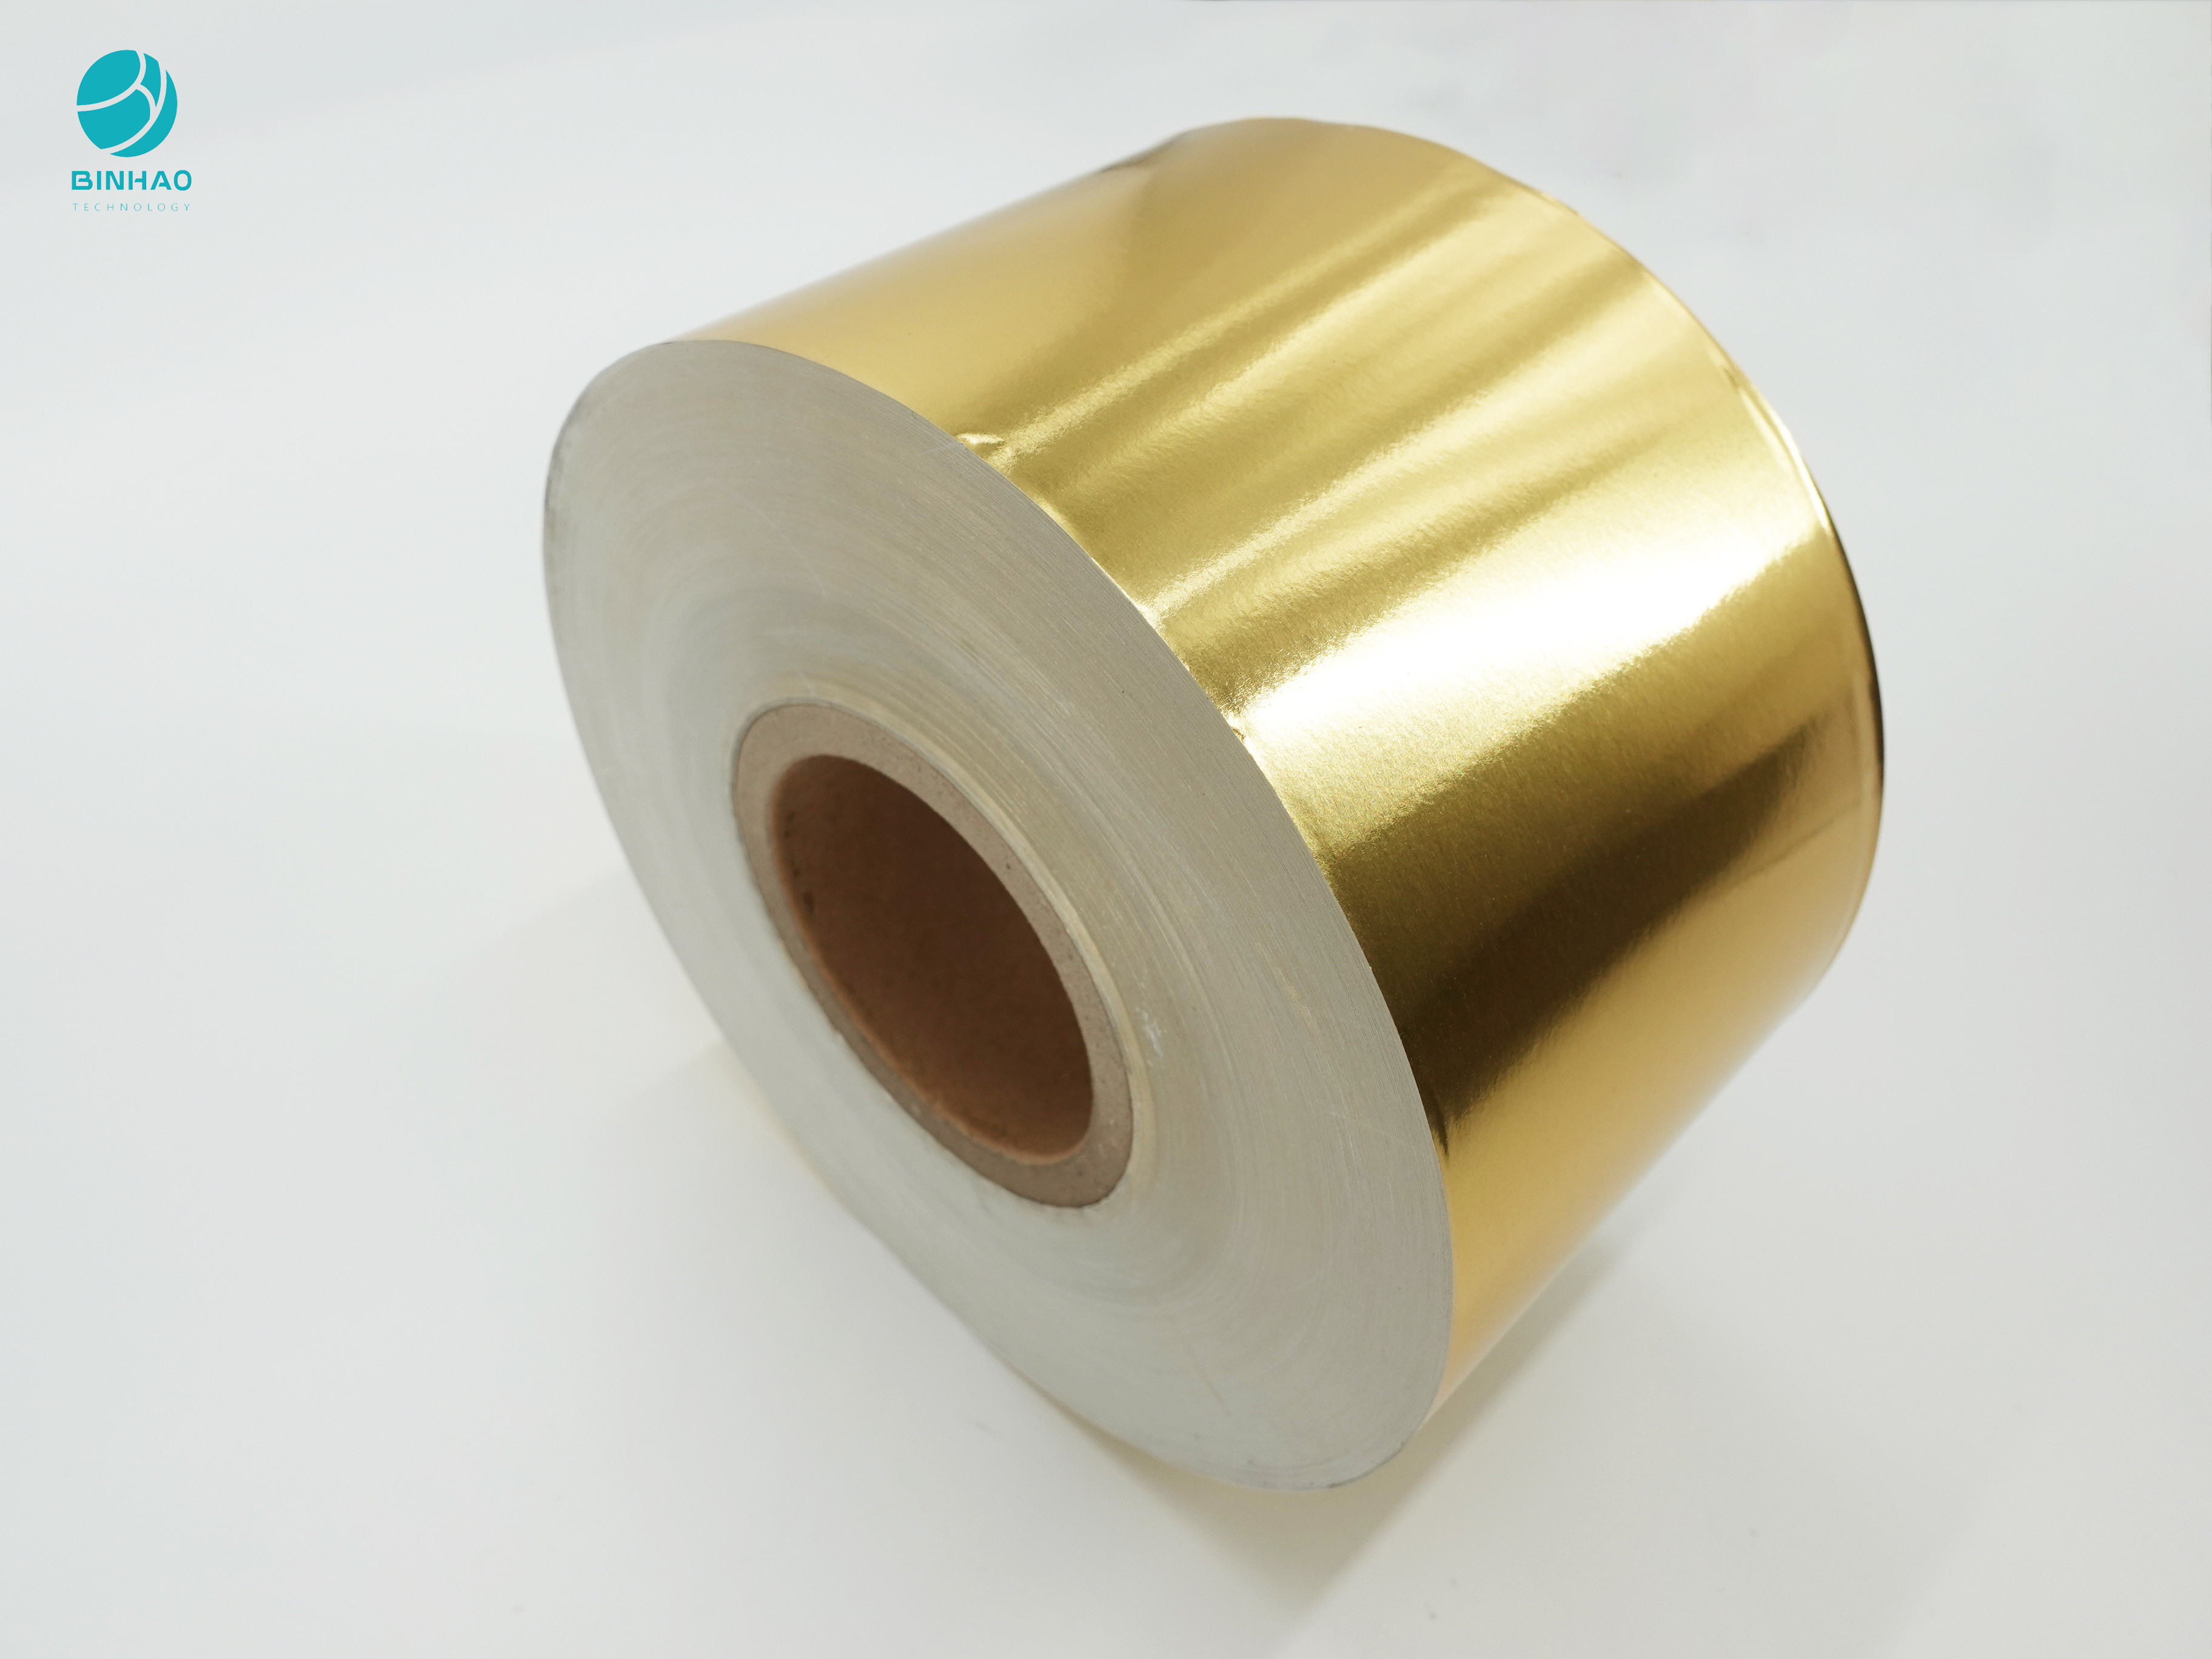 کاغذ فویل آلومینیومی طلایی براق 55 گرمی برای بسته بندی سیگار